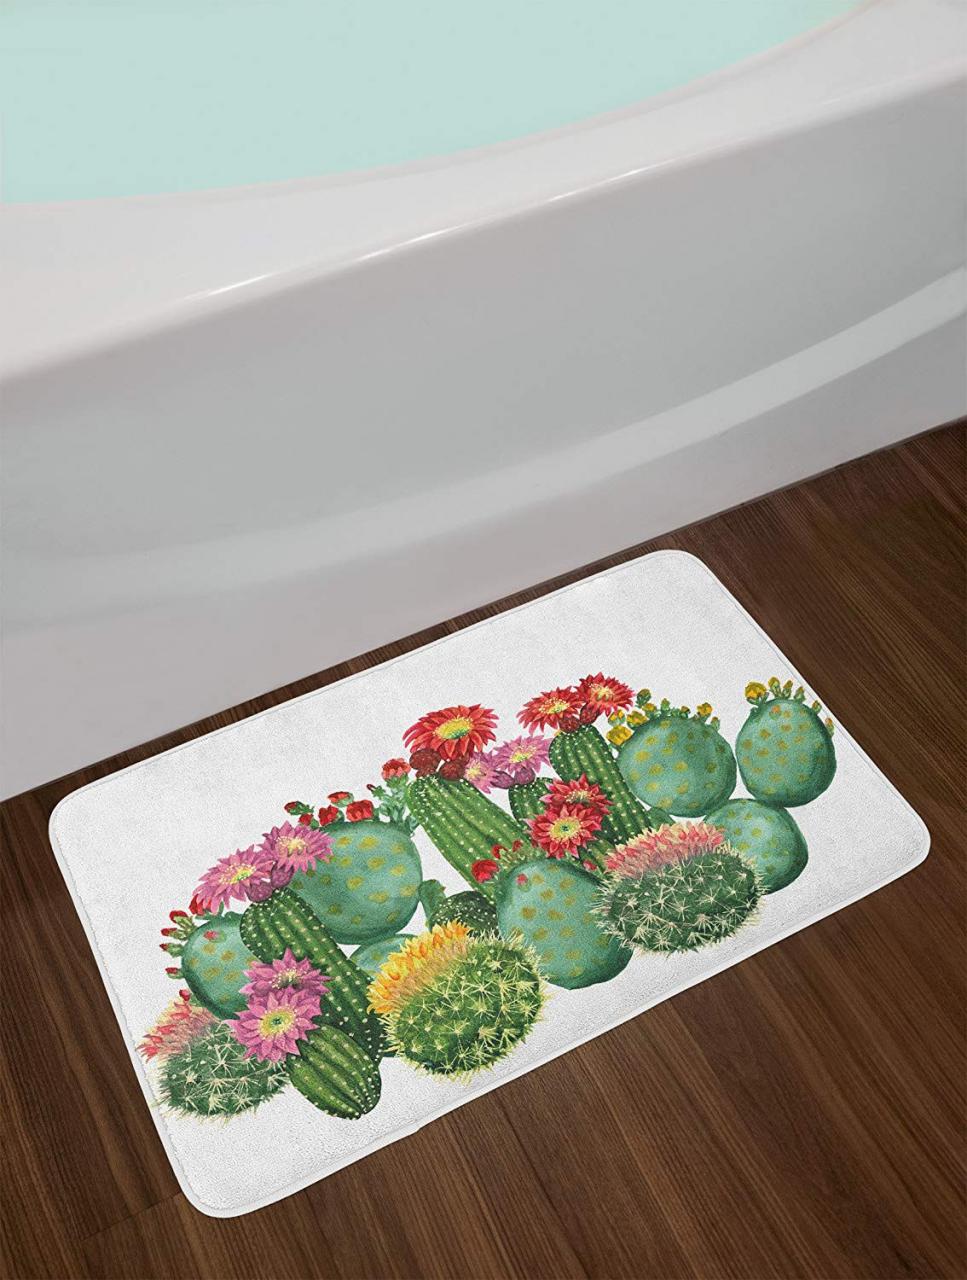 10 Cool And Fresh Cactus Themed Bathroom Decor Ideas